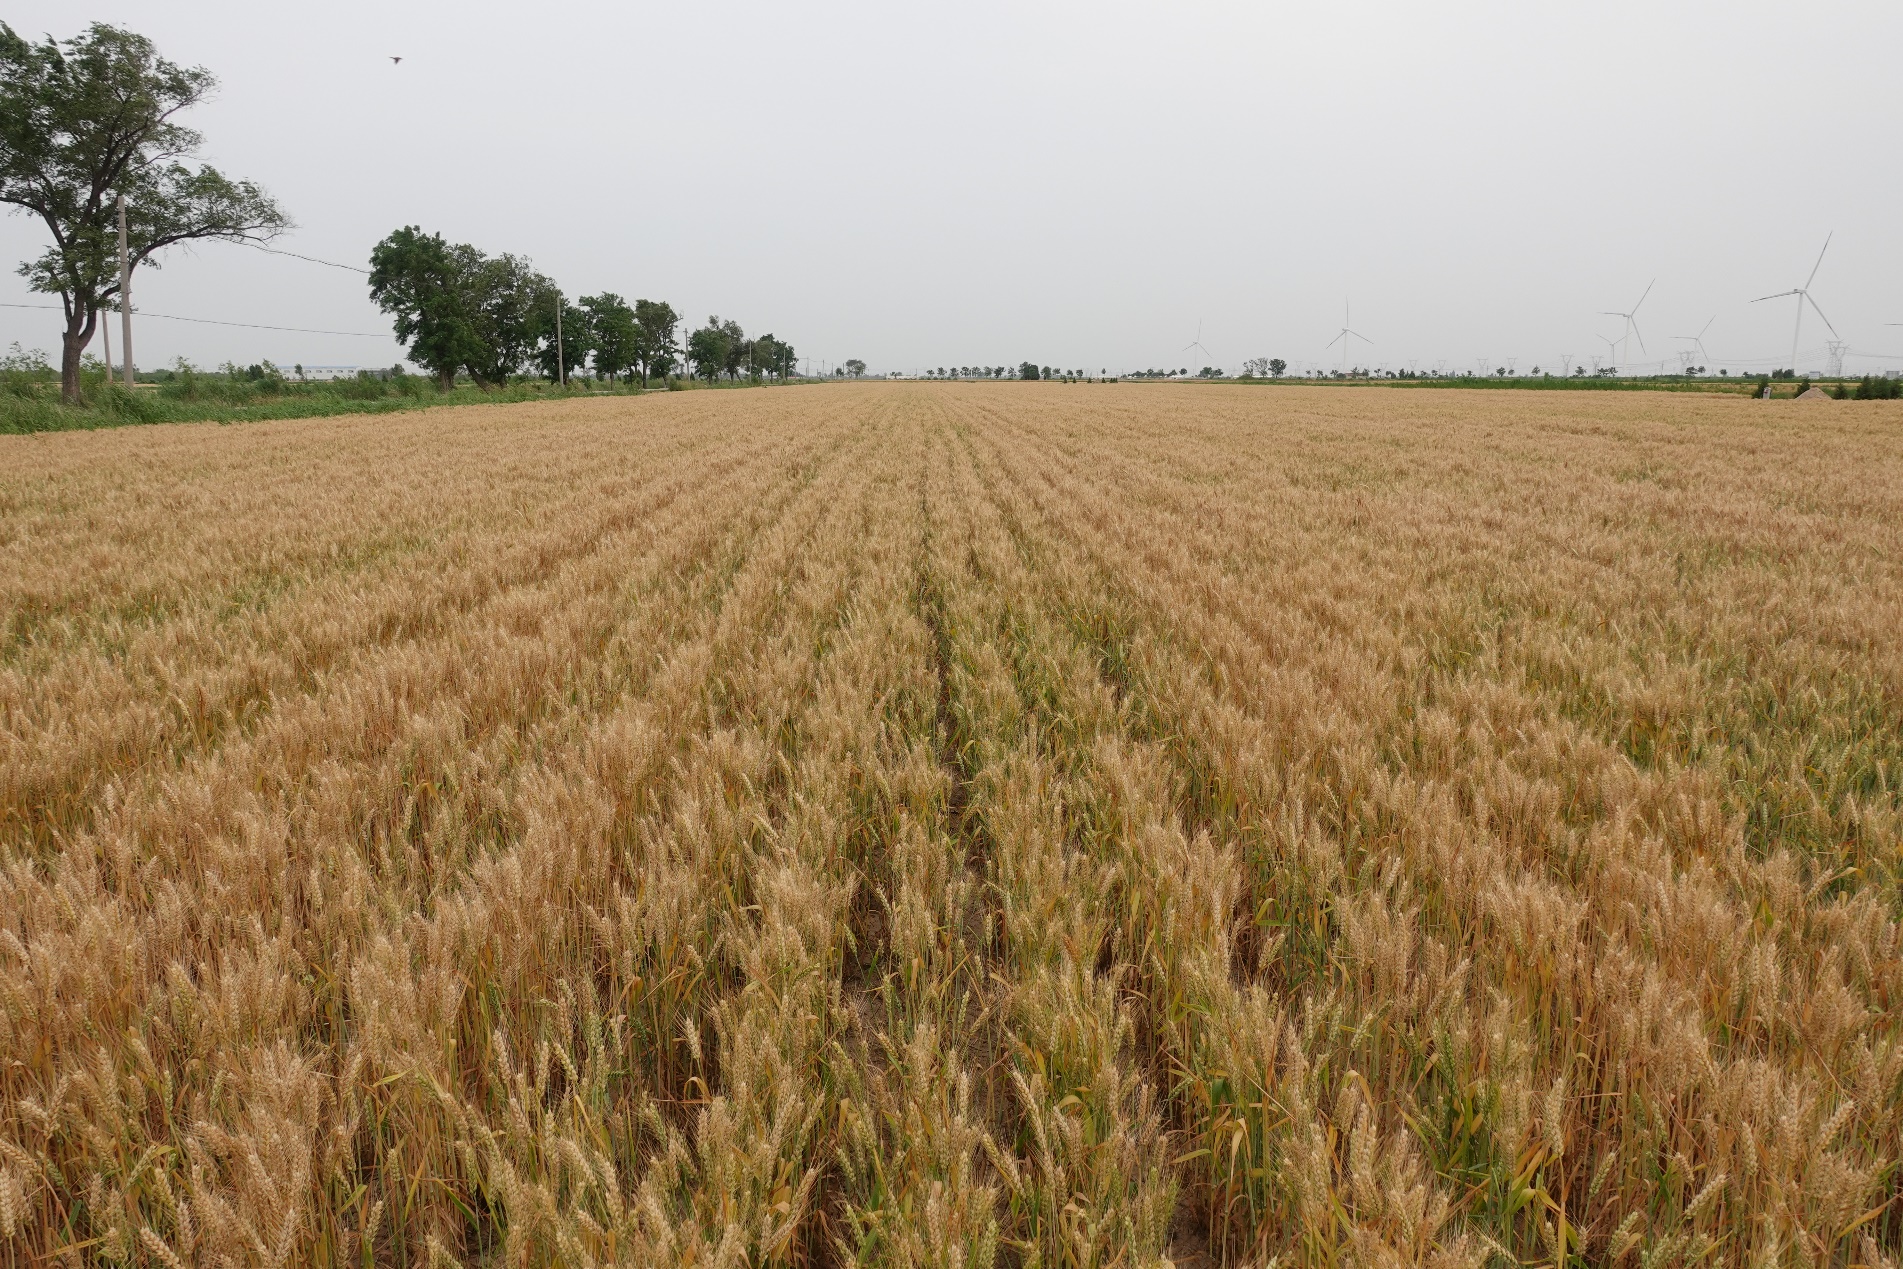 耐盐抗旱小麦新品种“小偃155”亩产超过411公斤